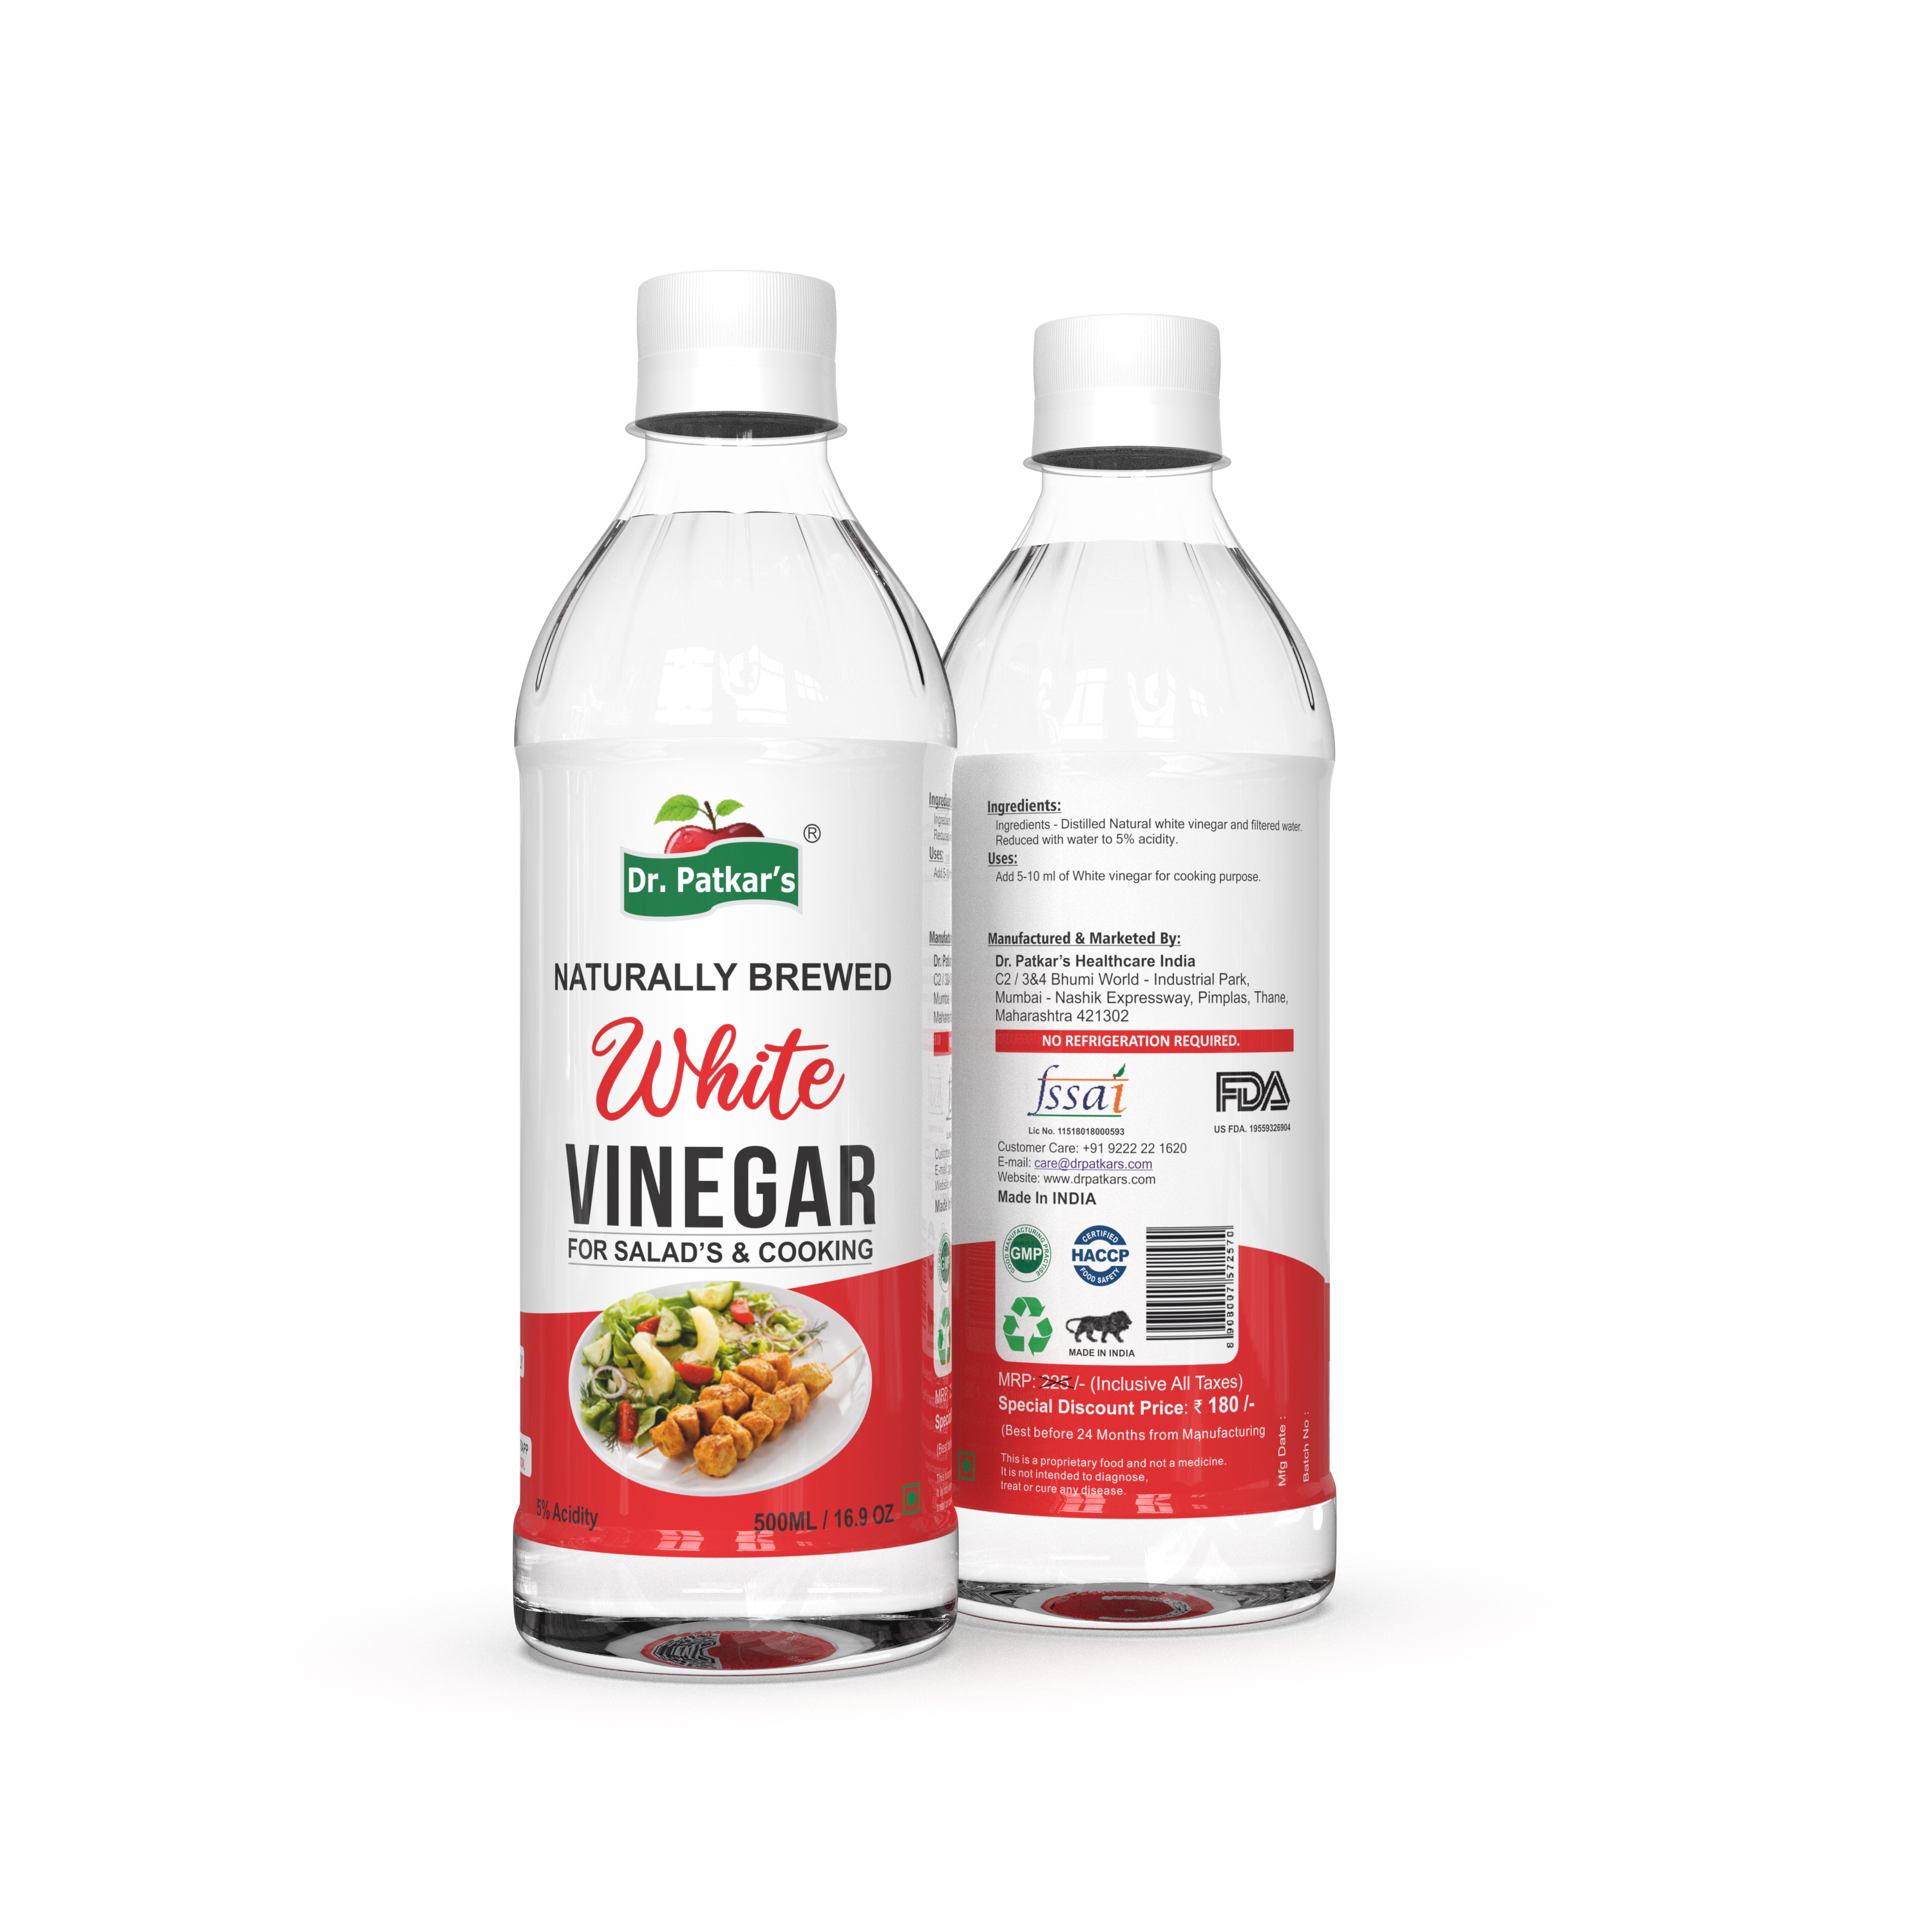 Buy Dr. Patkar's White vinegar at Best Price Online